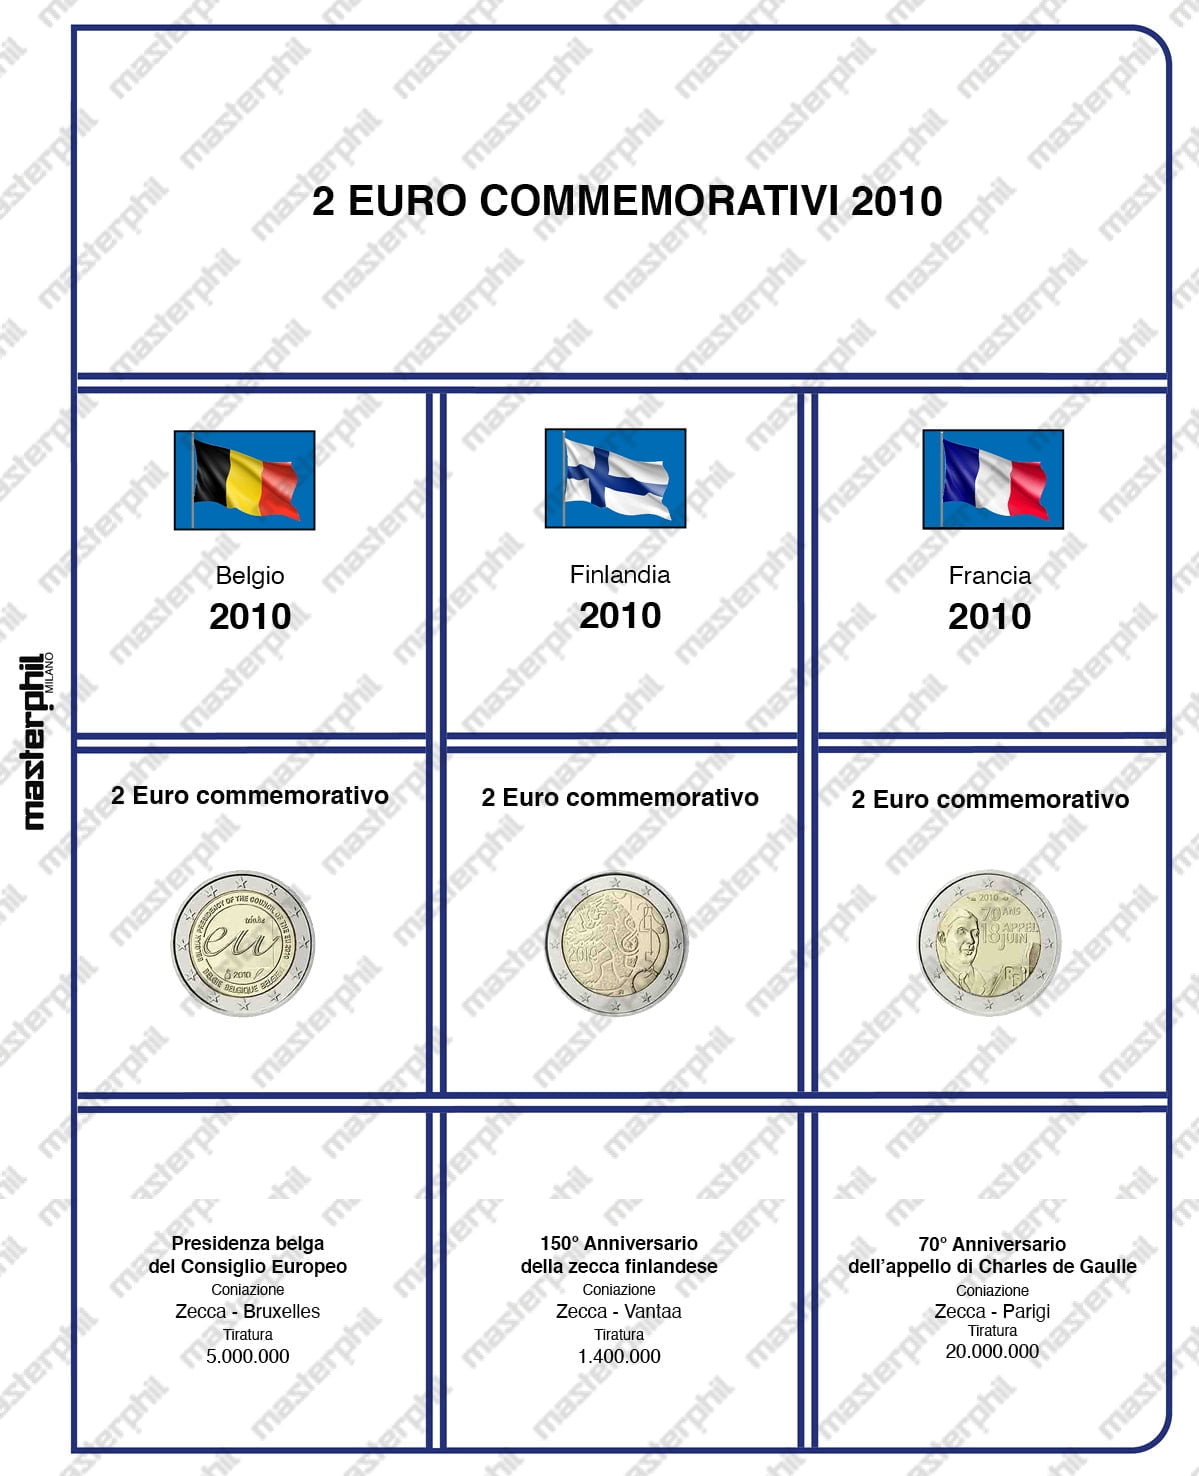 Raccoglitori per 2 euro commemorativi - Altre discussioni relative